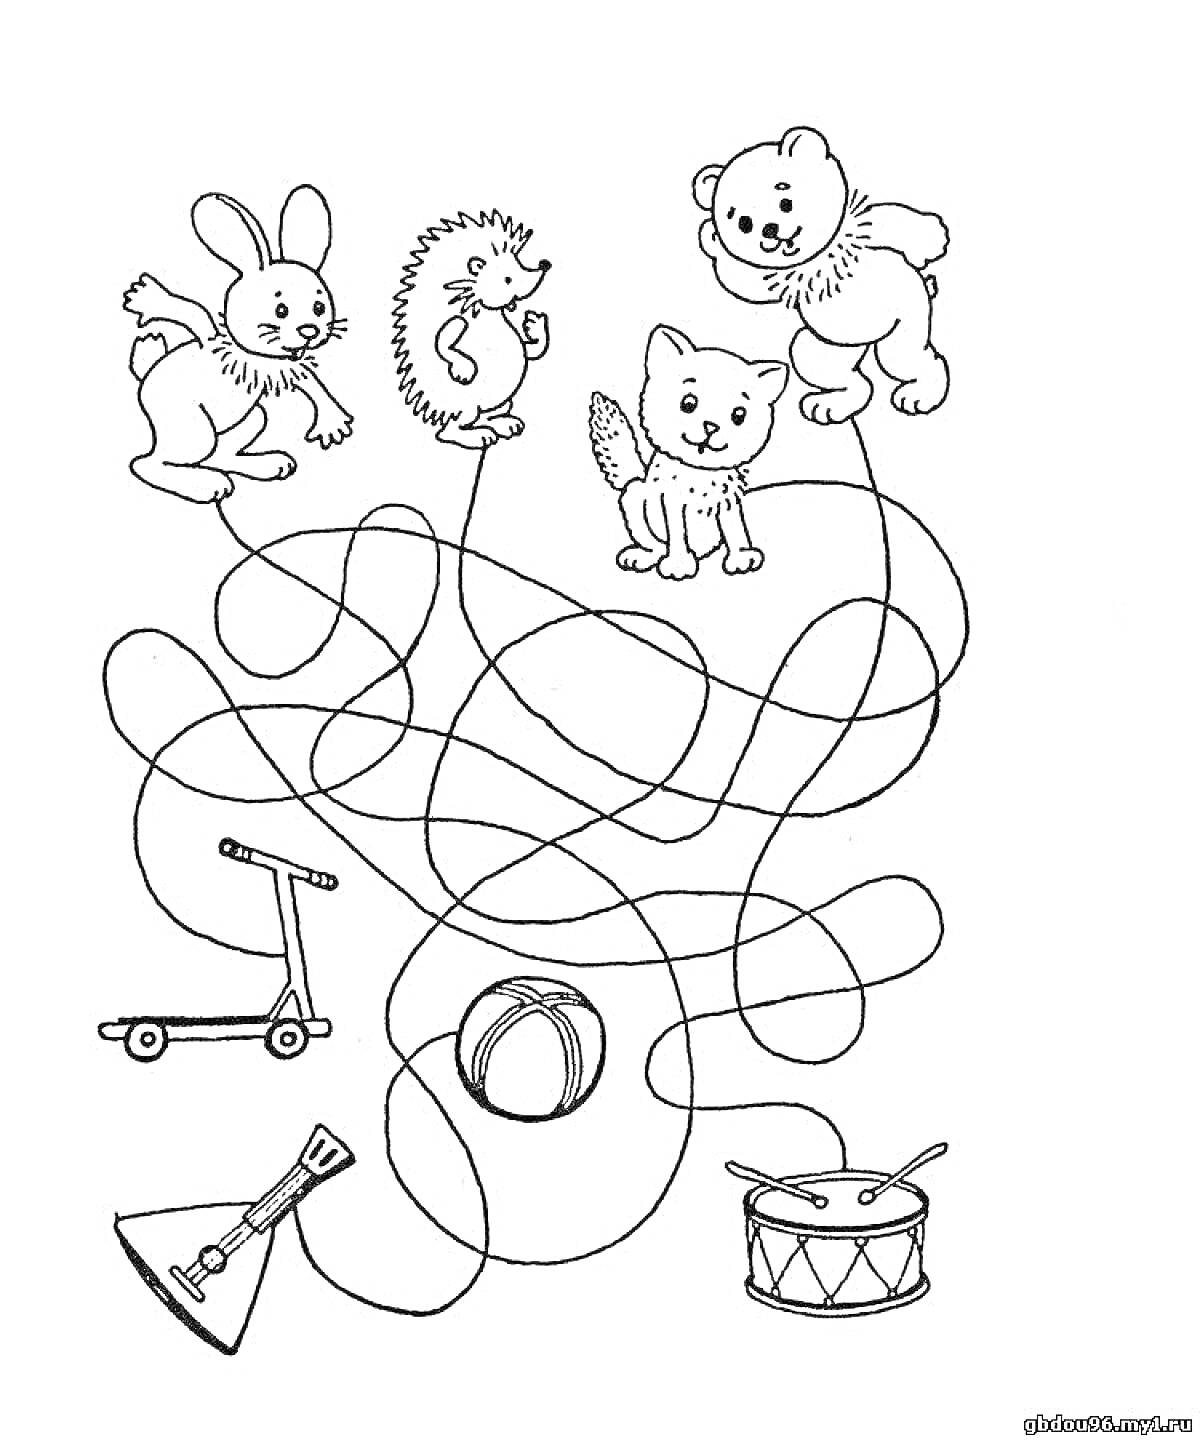 Раскраска Зверята и игрушки - заяц, ежик, медведь, кот, самокат, юла, барабан, мяч